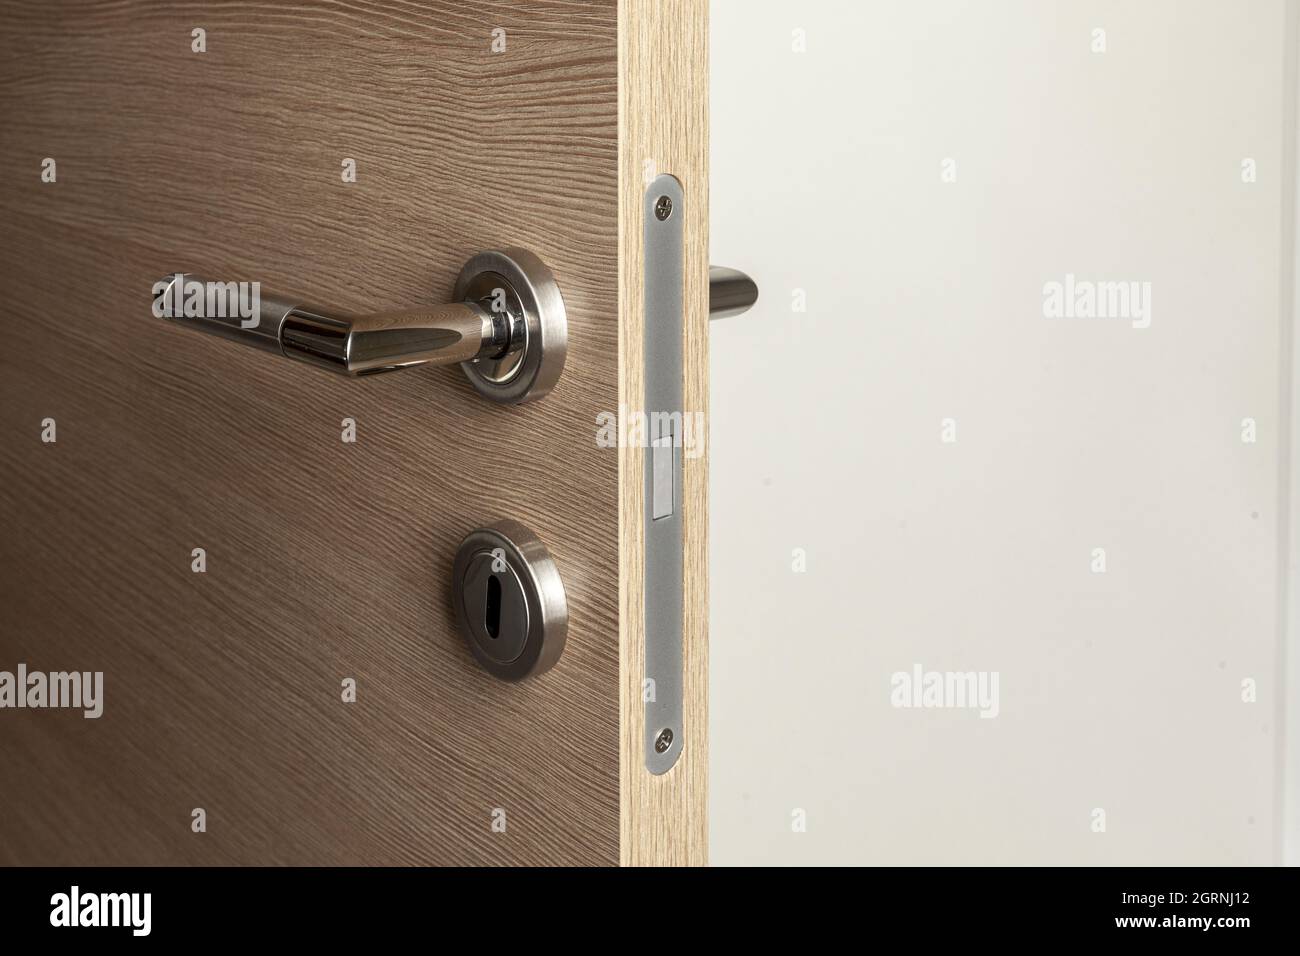 open wooden door with magnetic lock Stock Photo